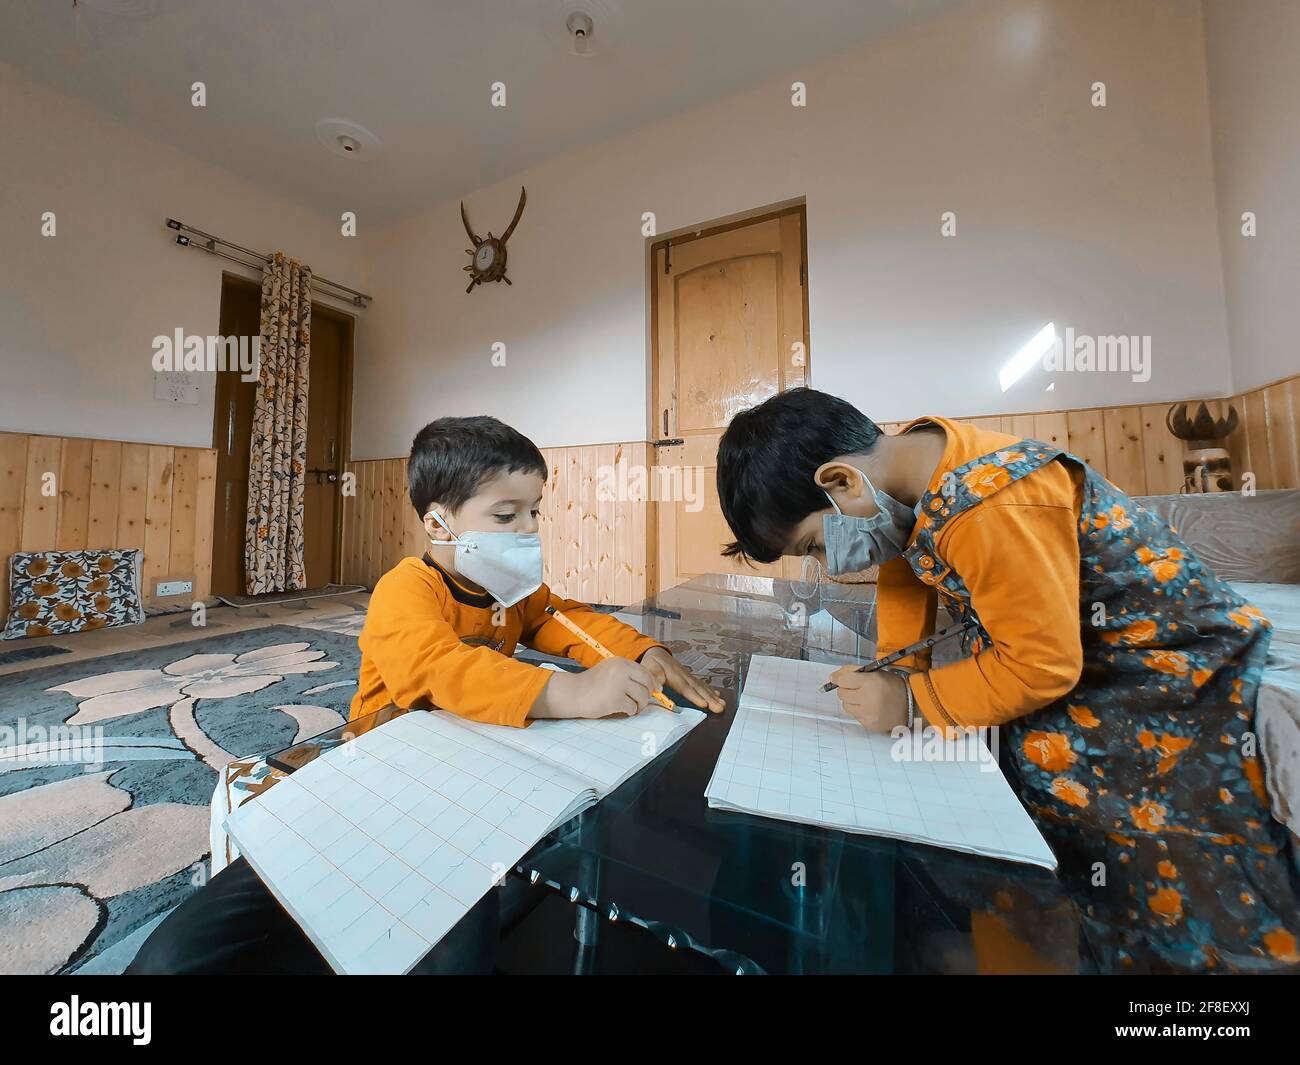 Los estudiantes que usan máscaras para leer y escribir en su escuela trabajan en casa durante el coronavirus pandémico. Las clases en línea son comunes debido a covid 19. Foto de stock